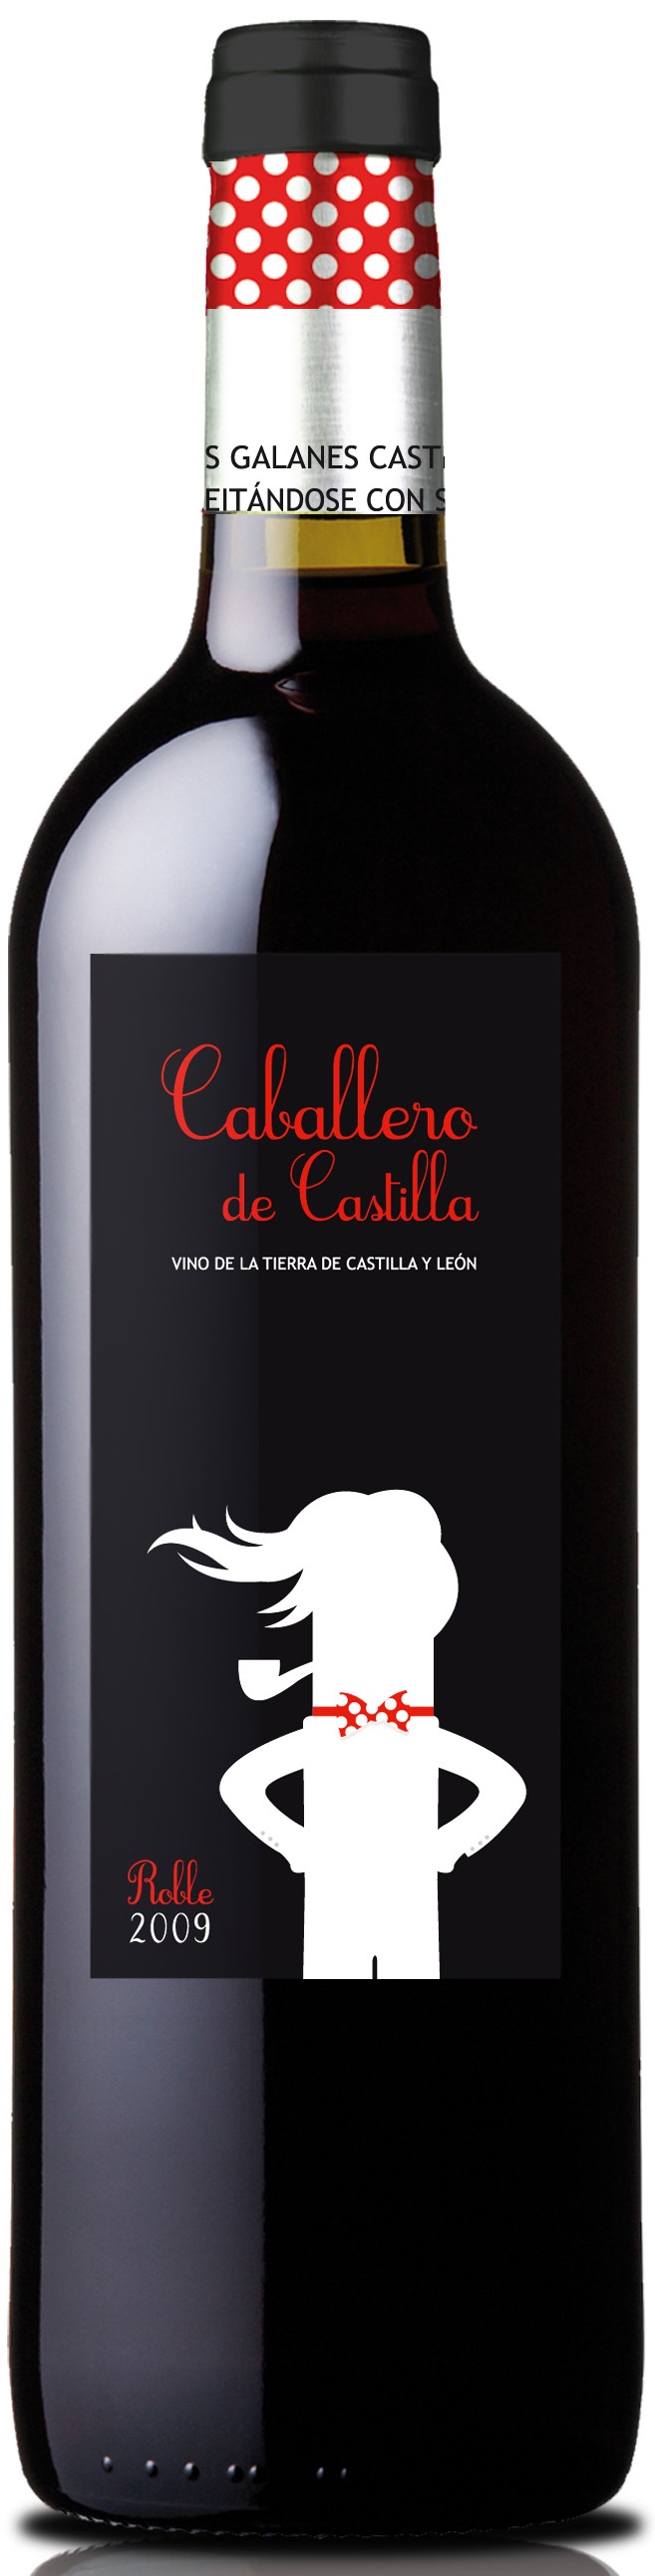 Image of Wine bottle Caballero de Castilla Roble